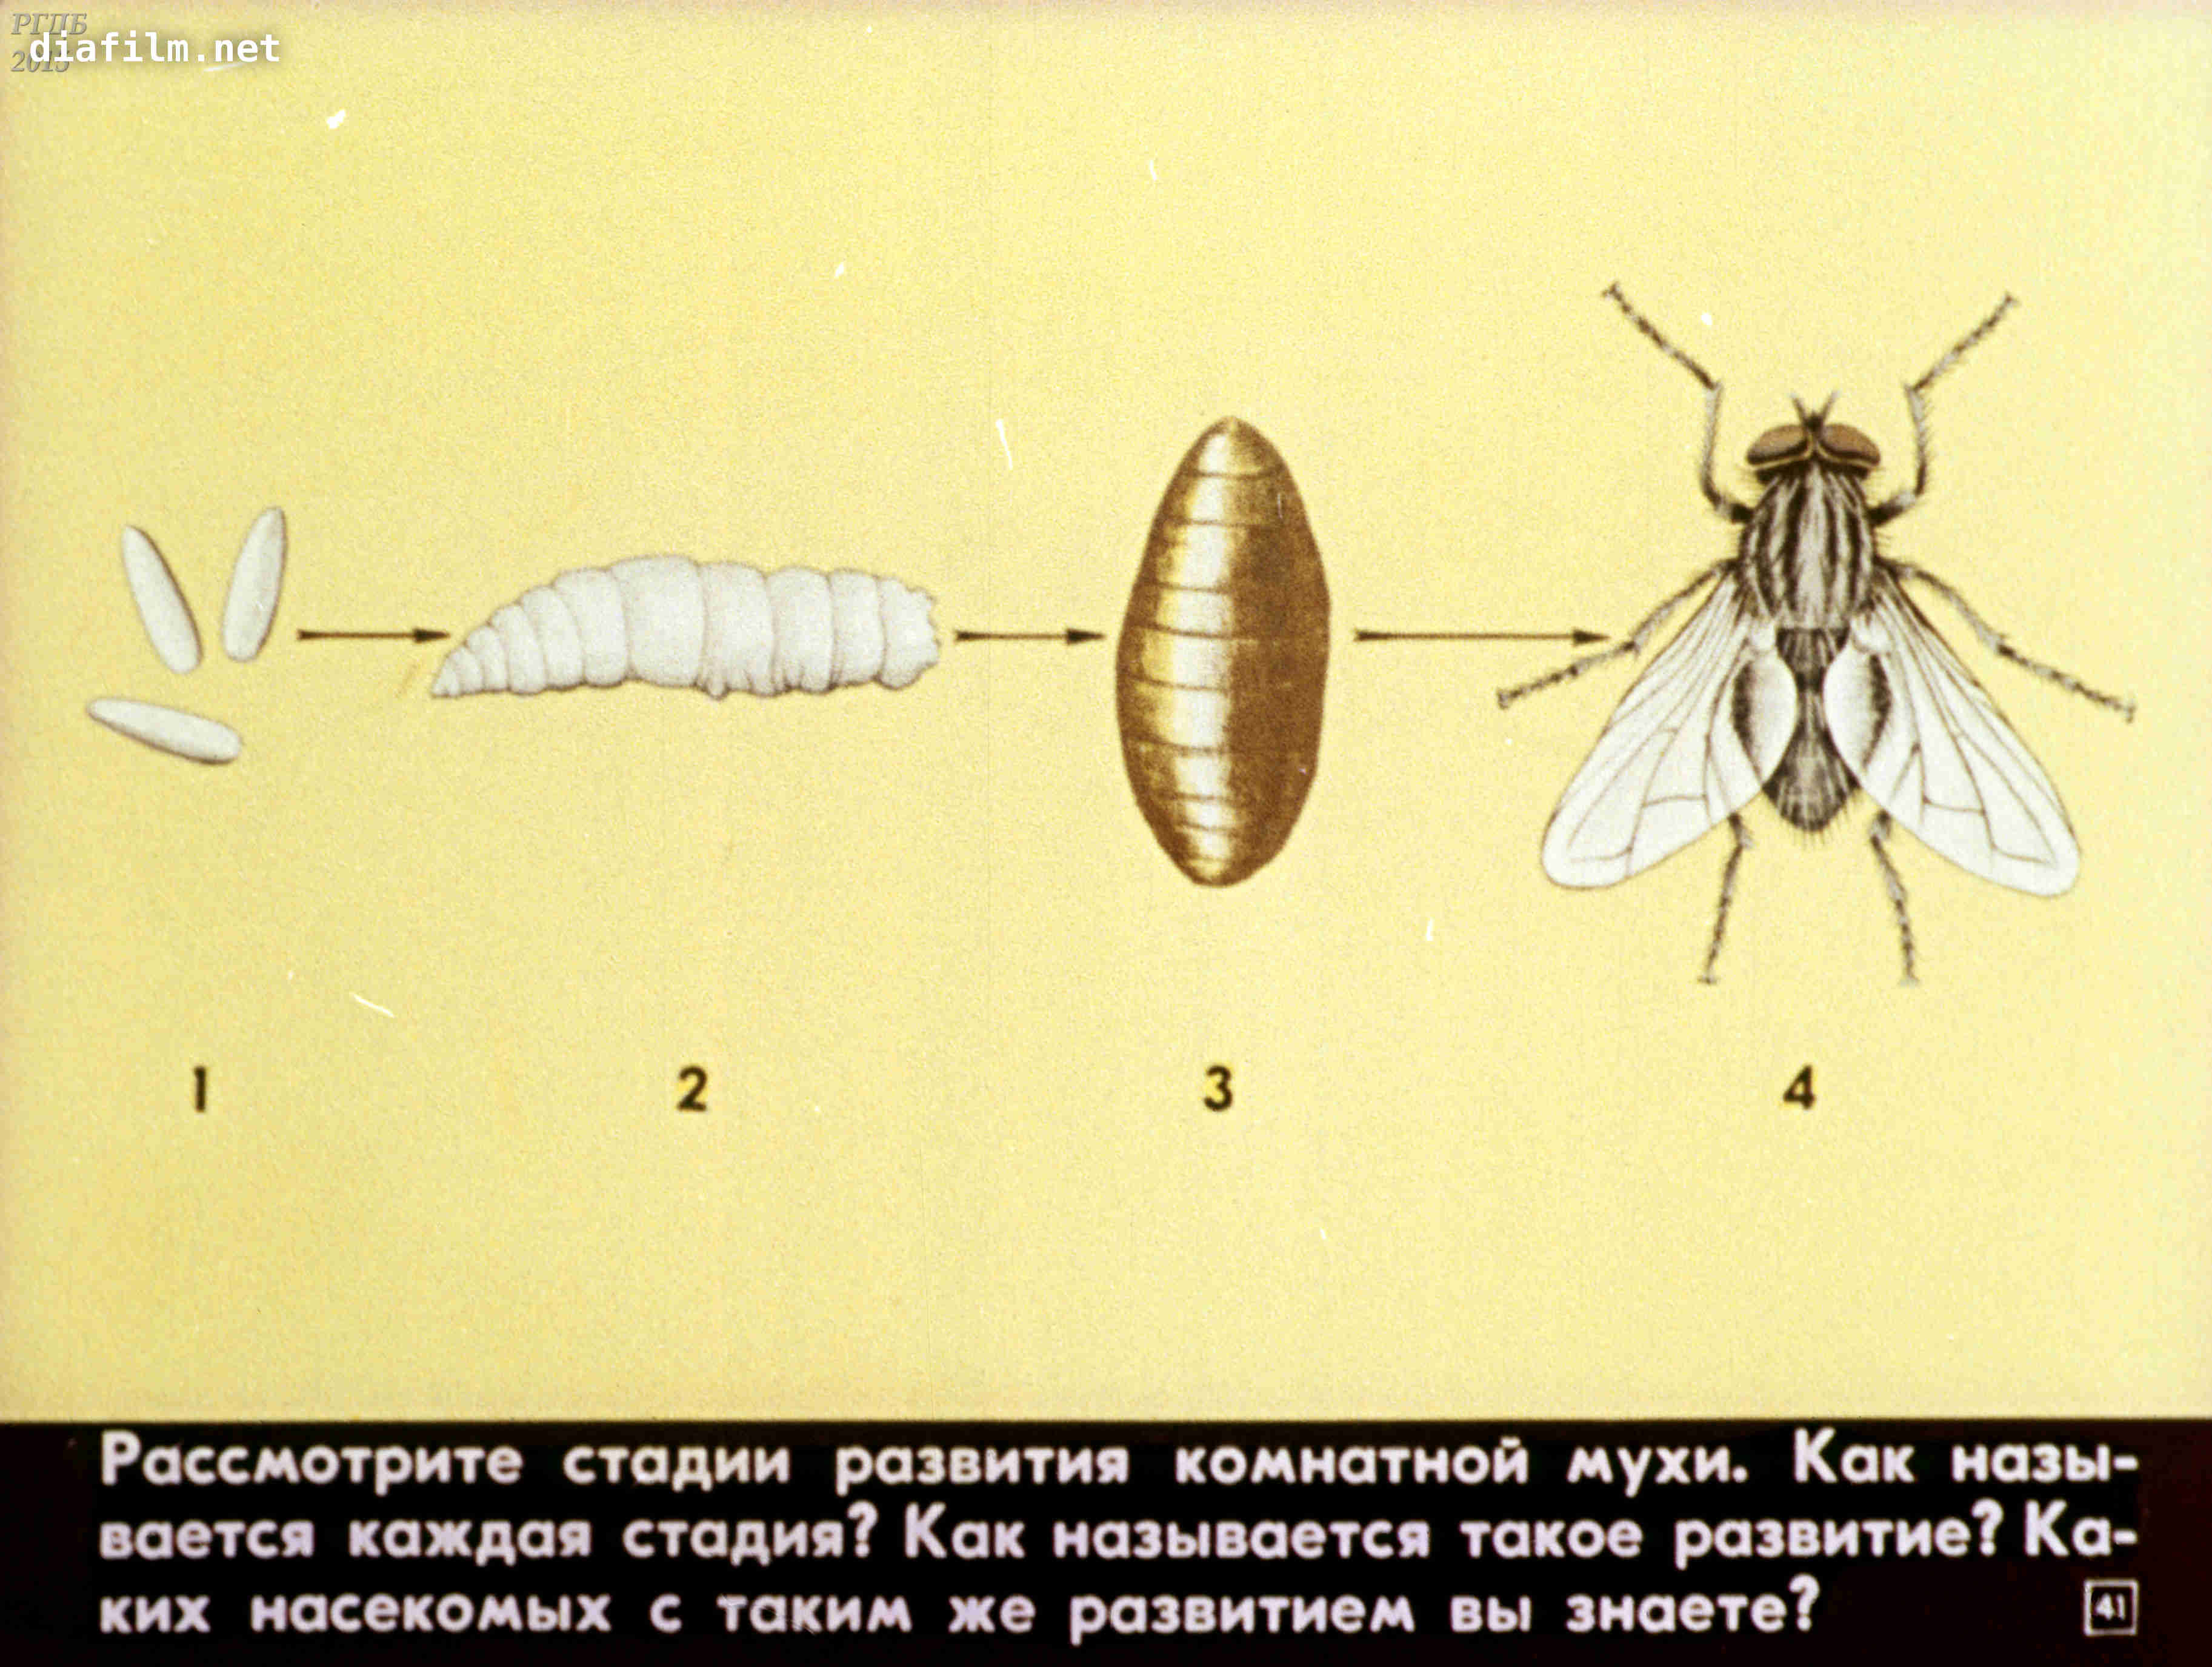 Как видит муха окружающий мир и сколько глаз у обыкновенной мухи? / как избавится от насекомых в квартире